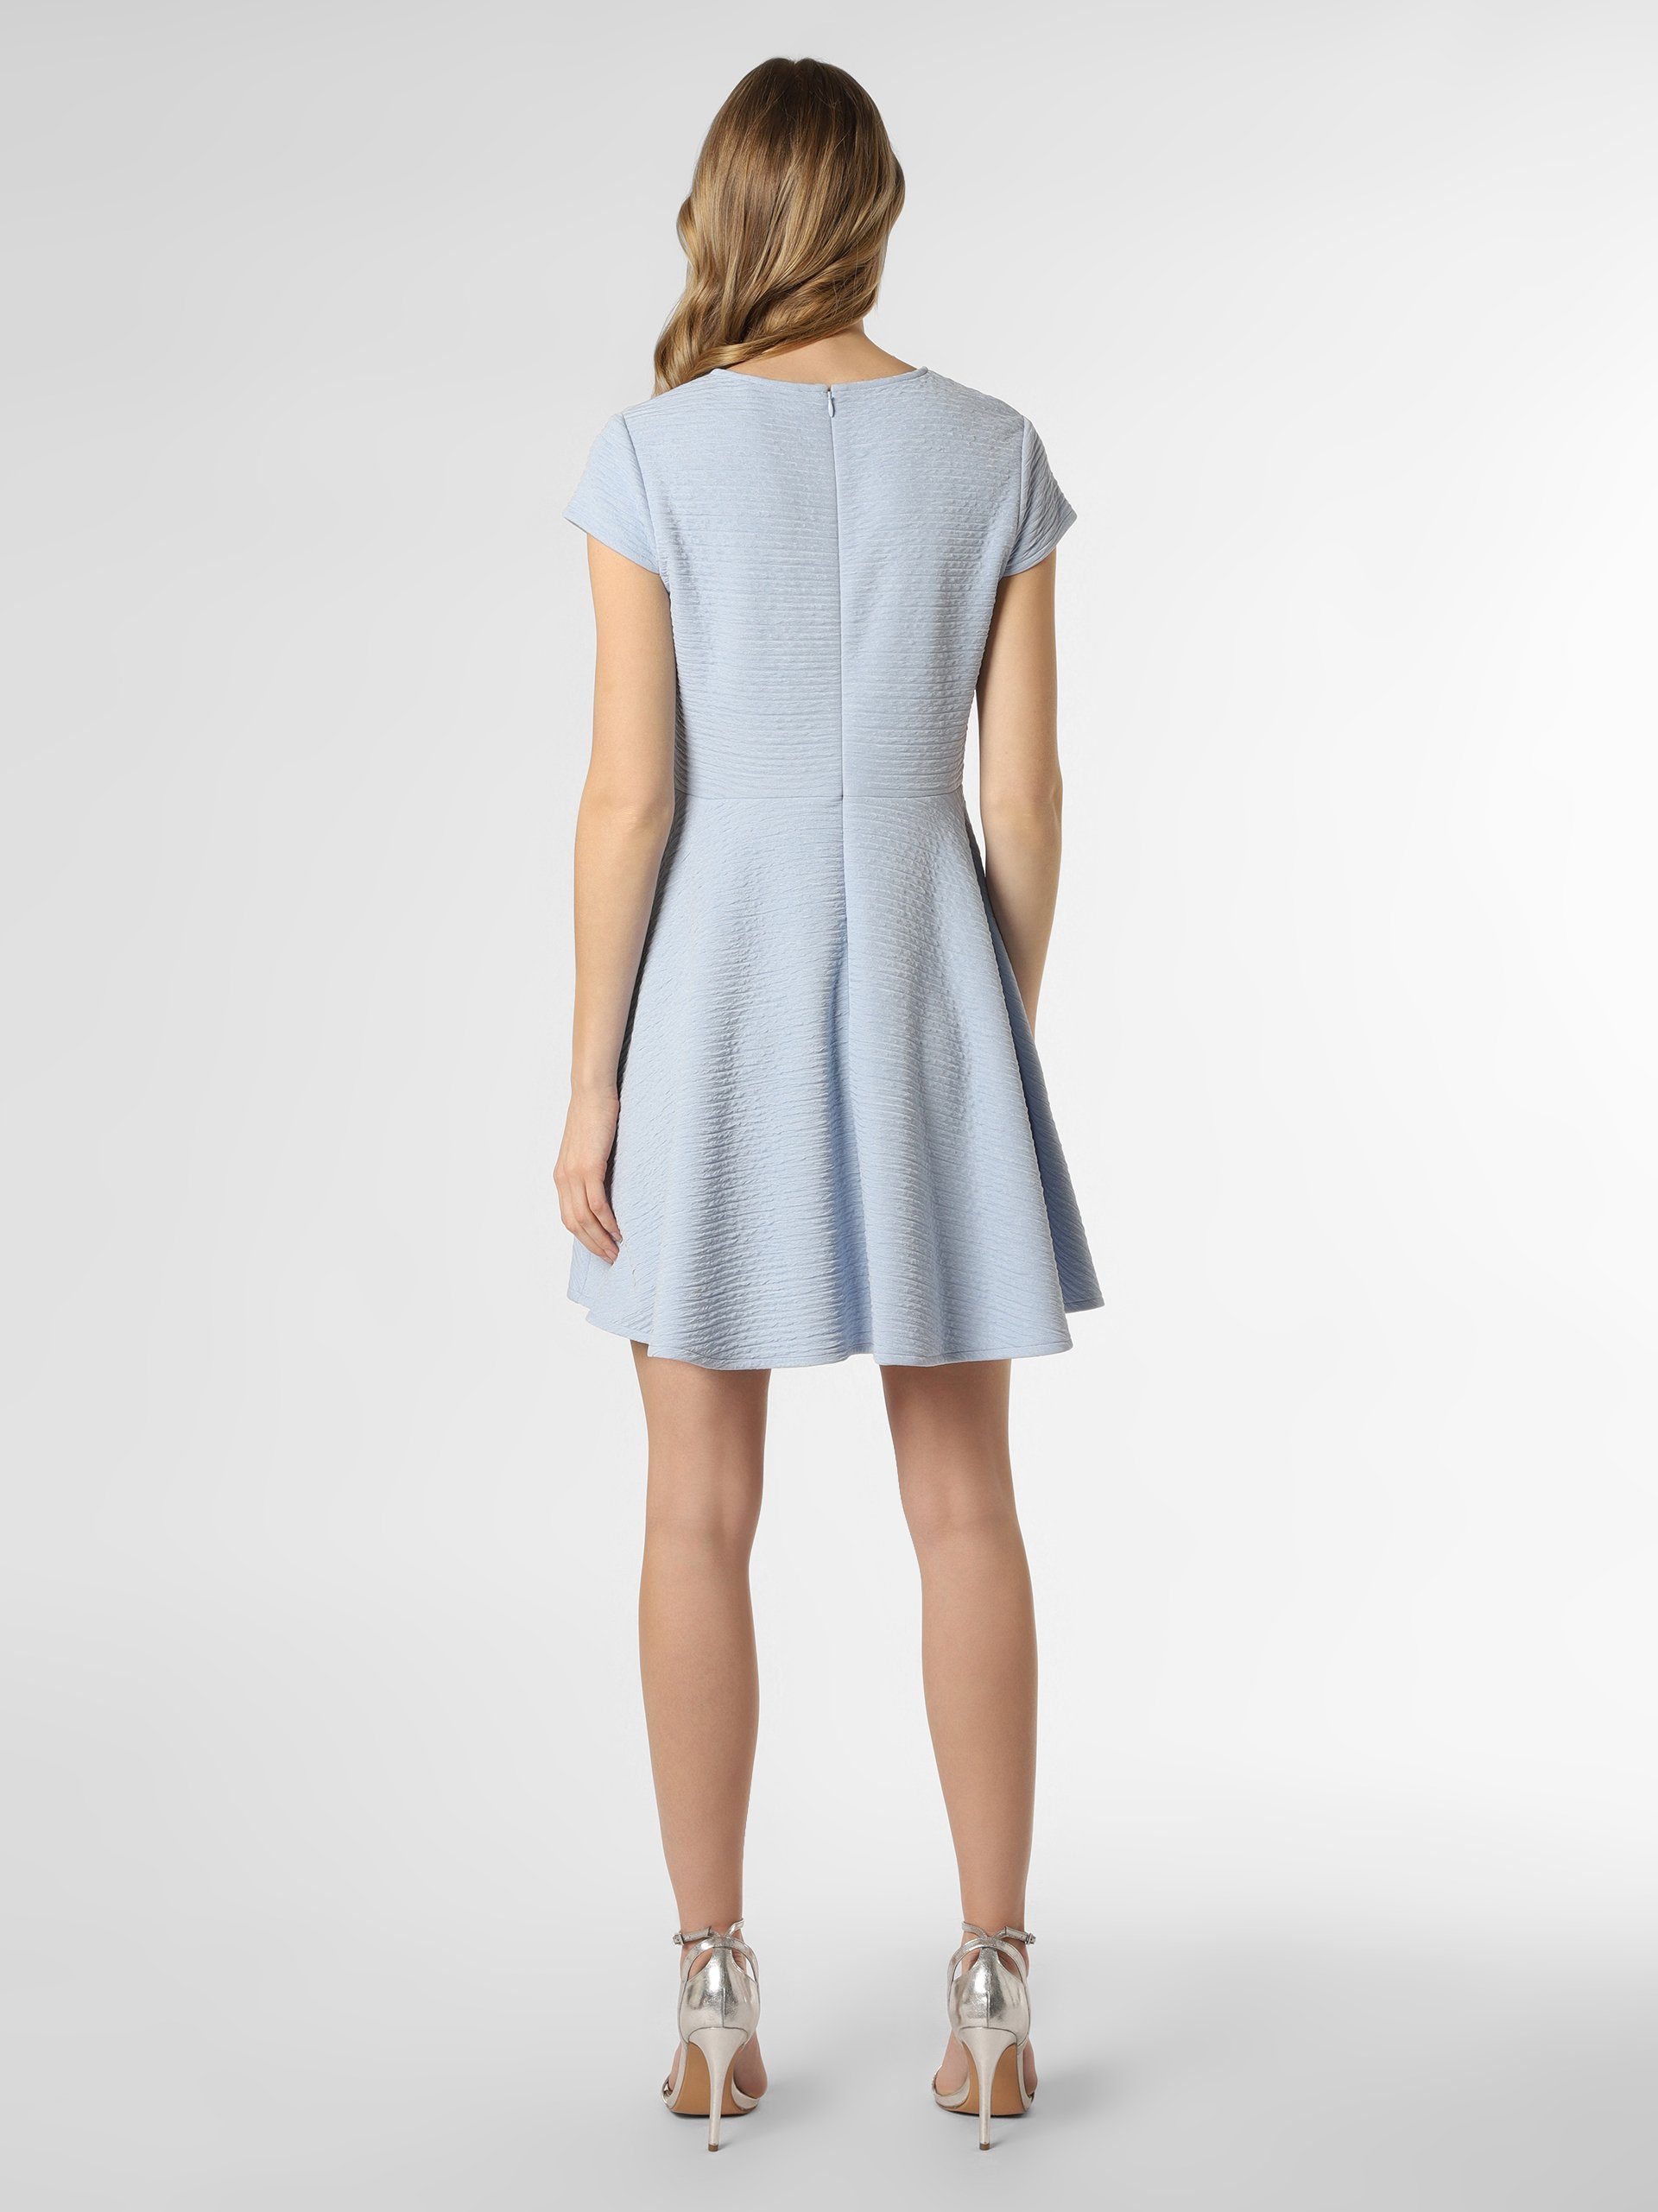 Marie Lund A-Linien-Kleid hellblau